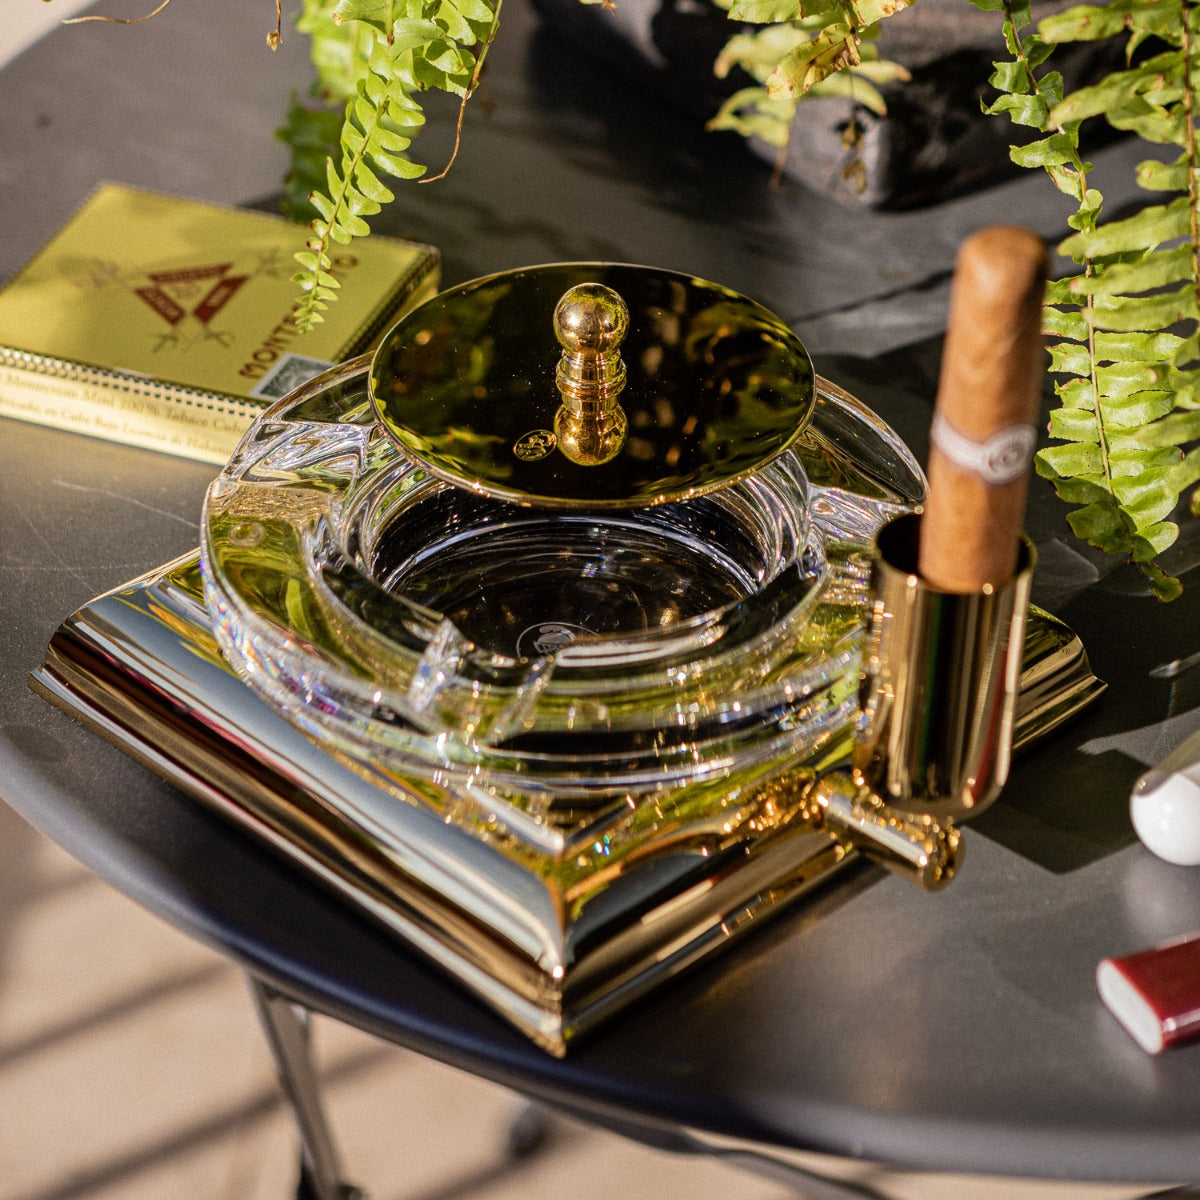 An El Casco Executive Cigar Ash Tray (Gold) on a table.